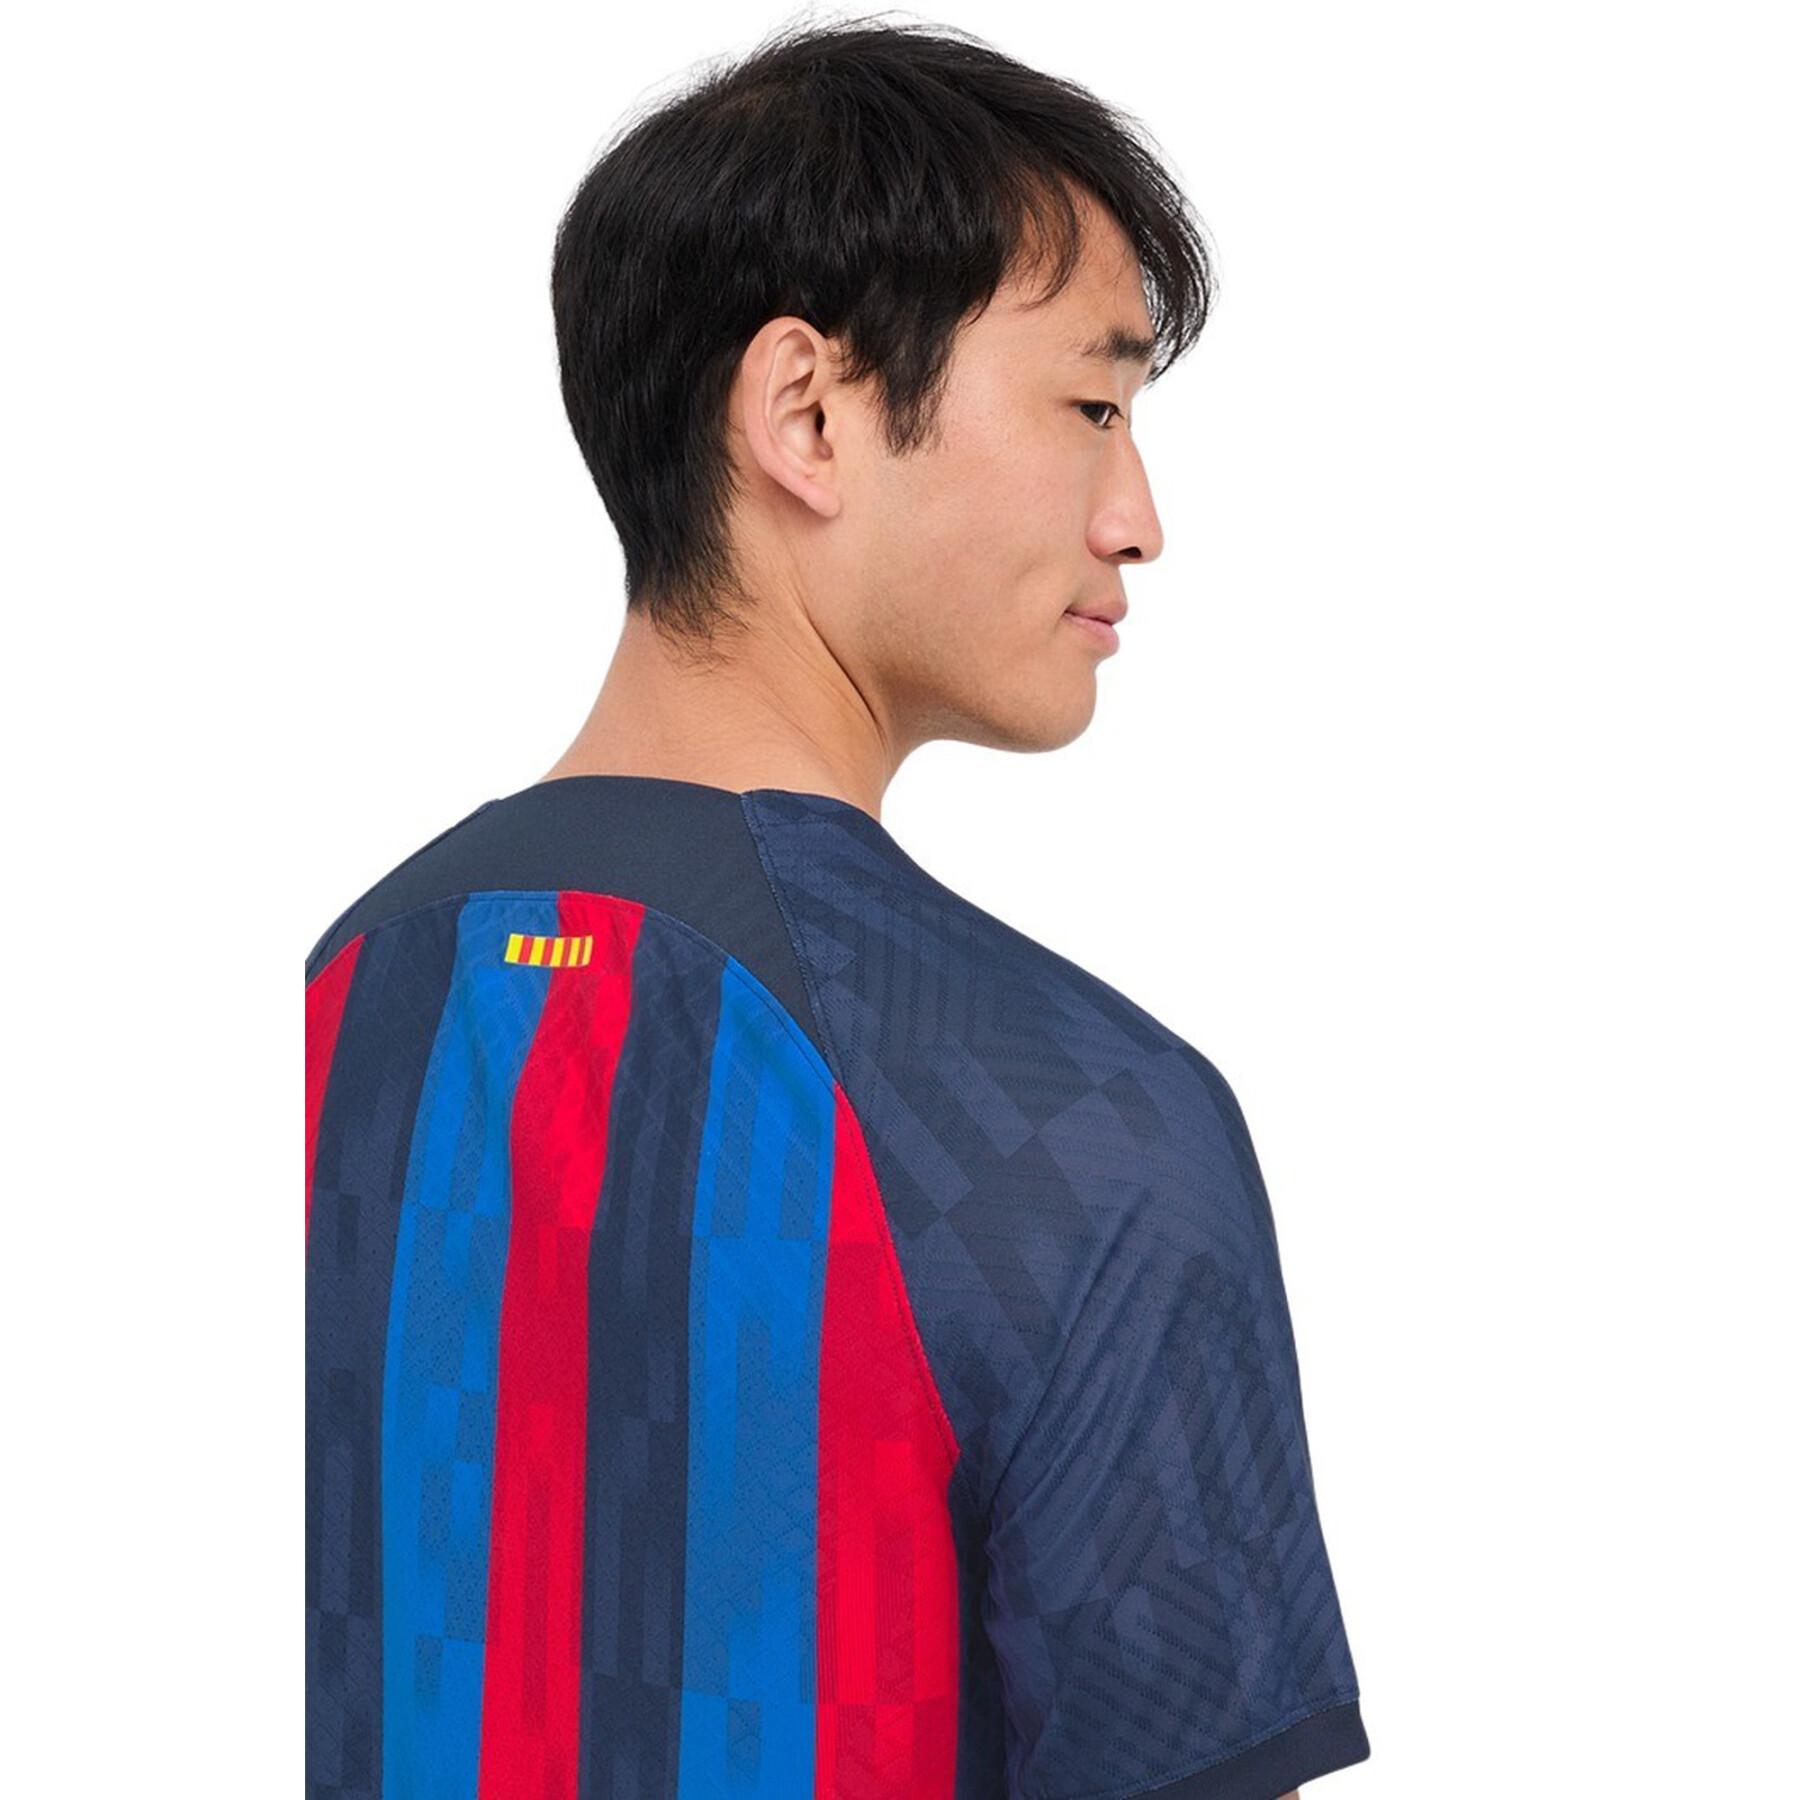 Camiseta primera equipación Authentic FC Barcelone 2022/23